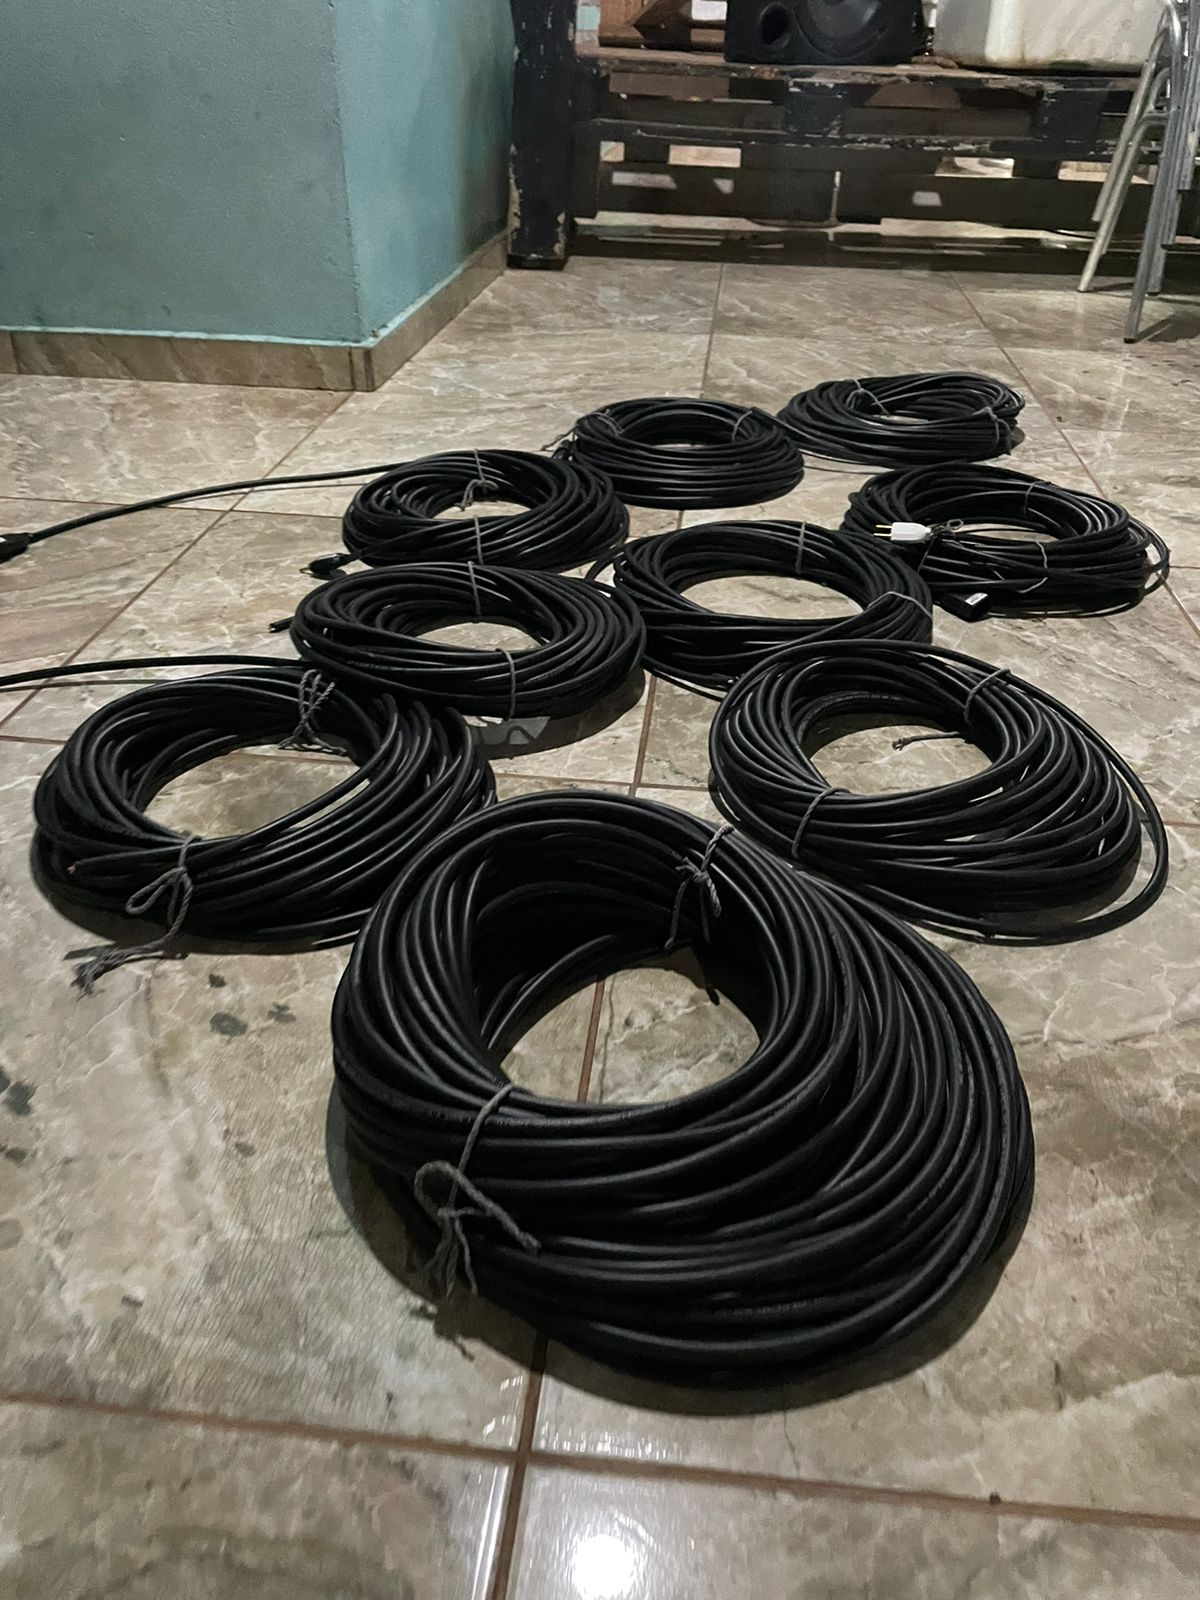 Polícia Civil recupera 270 metros de cabos de cobre furtados em São Miguel do Gostoso